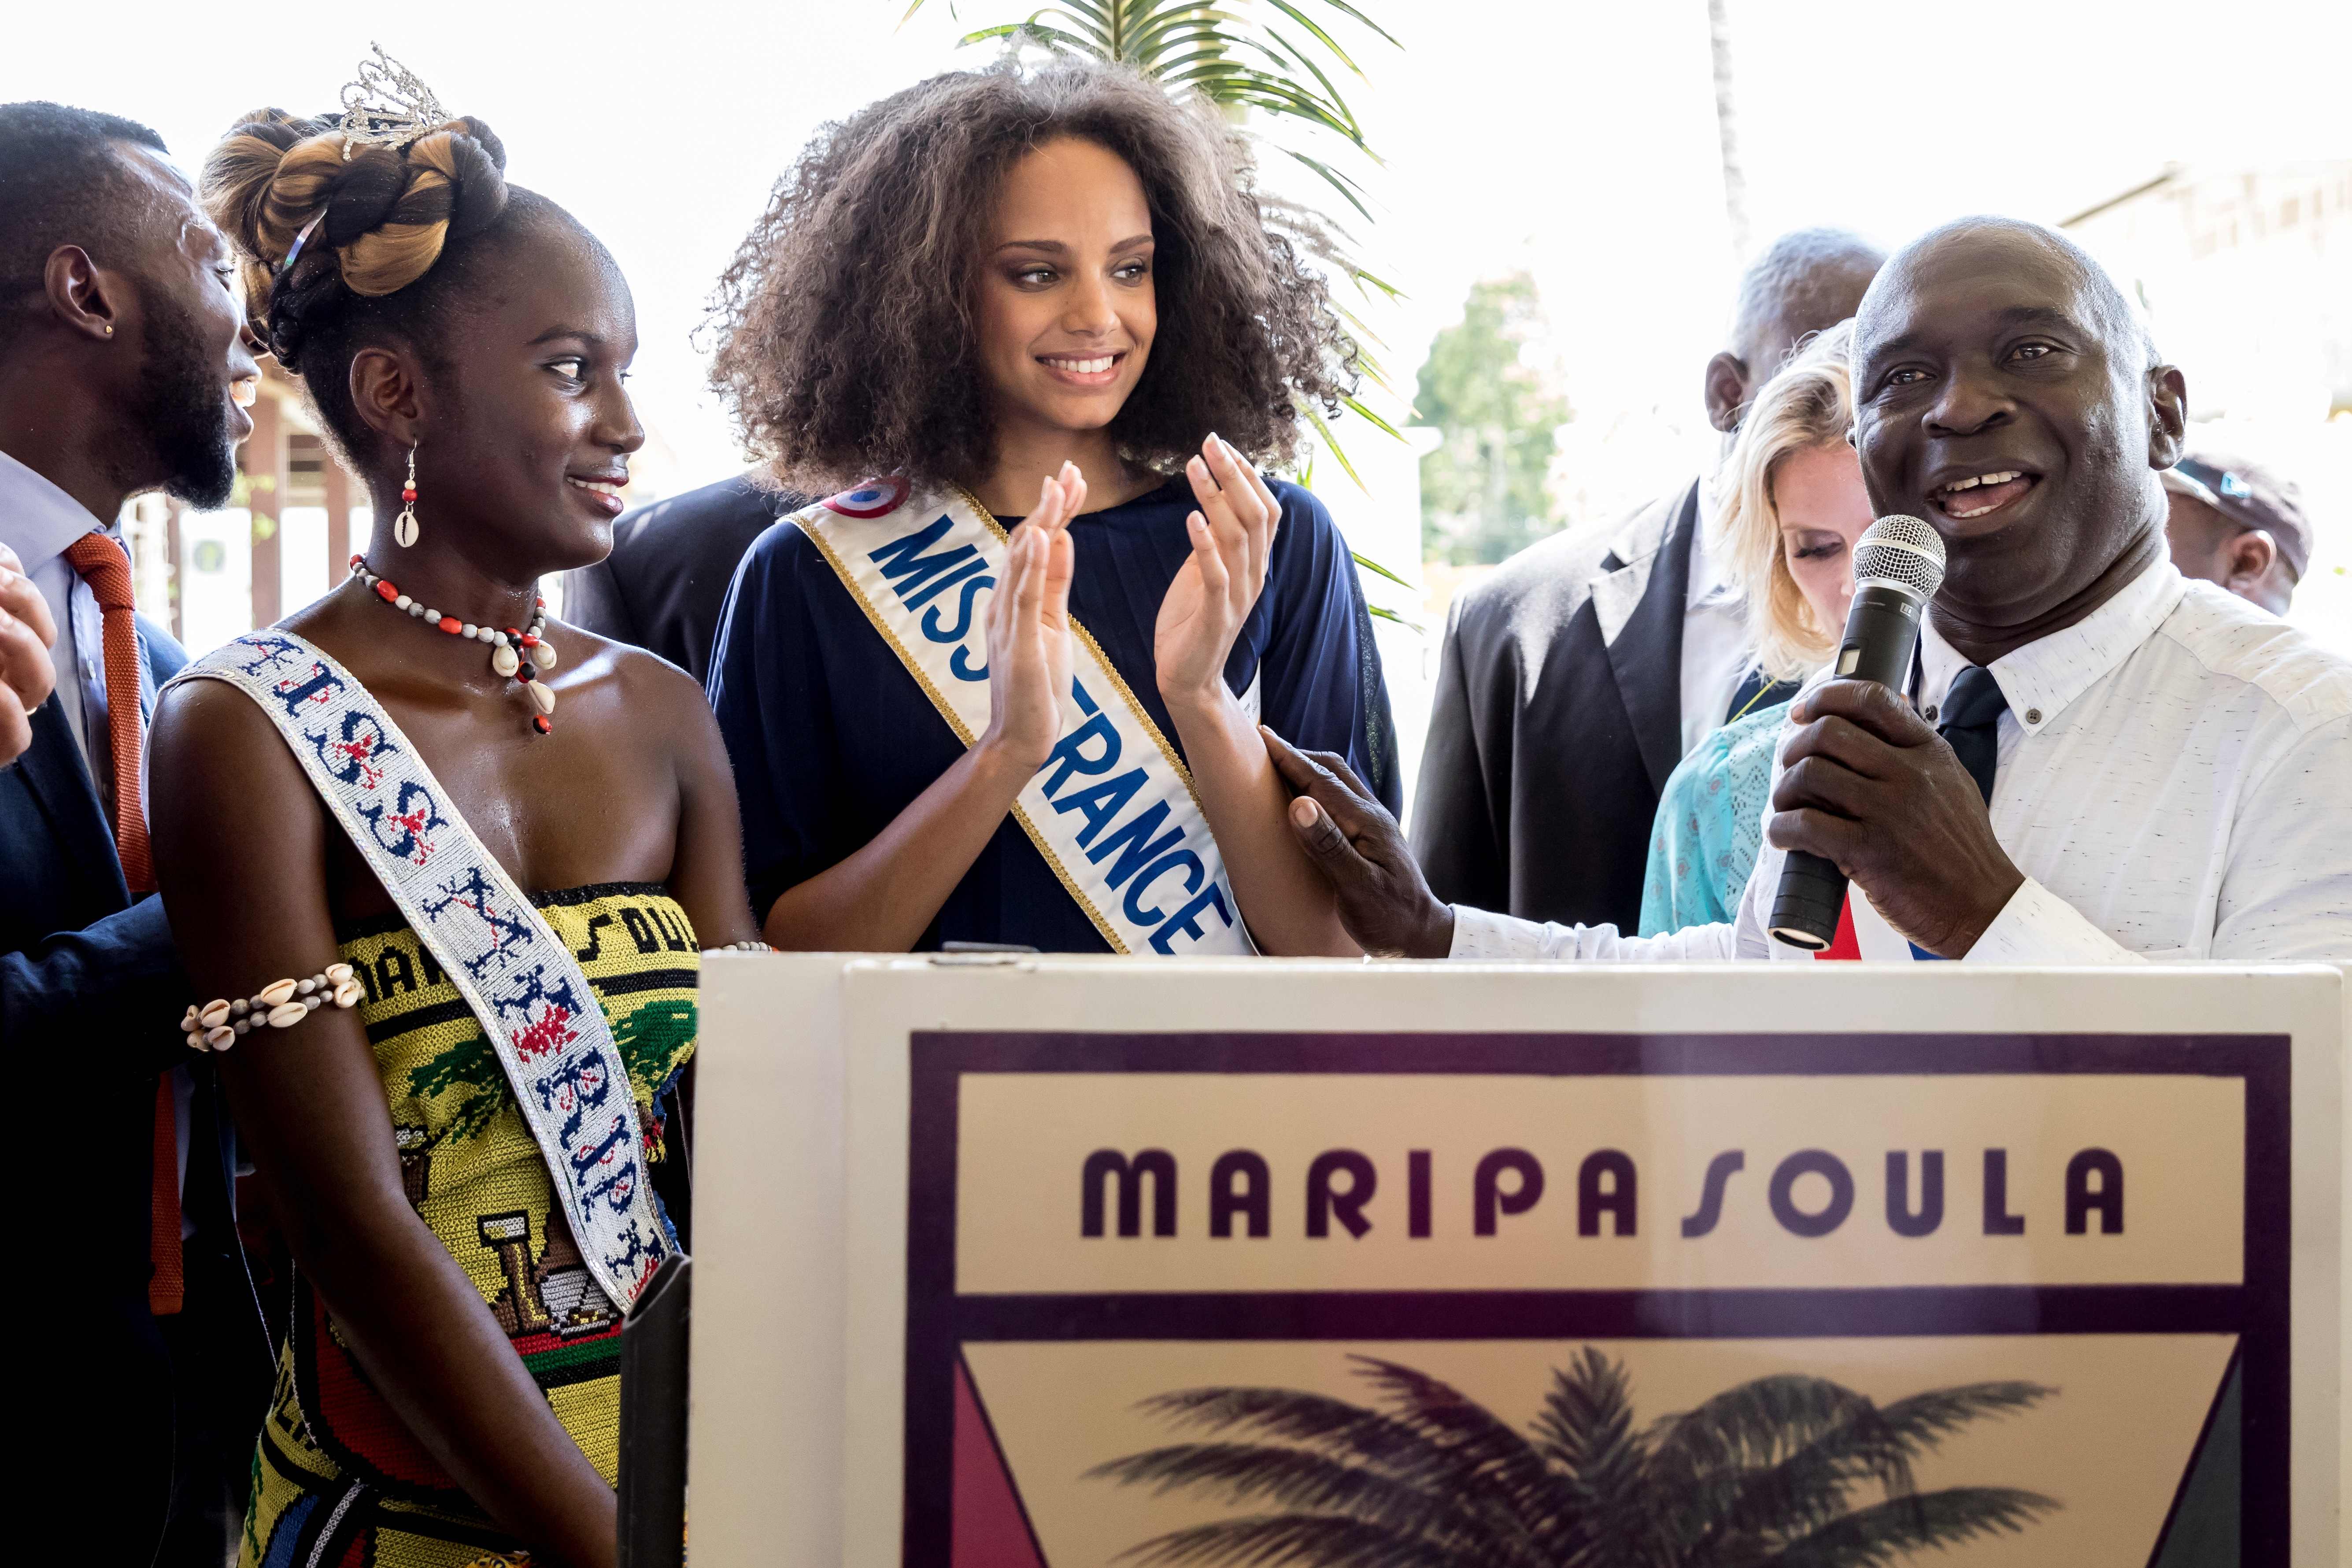 ملكة جمال فرنسا تصفق لرئيس بلدية ماريباسولا فى المؤتمر الصحفى